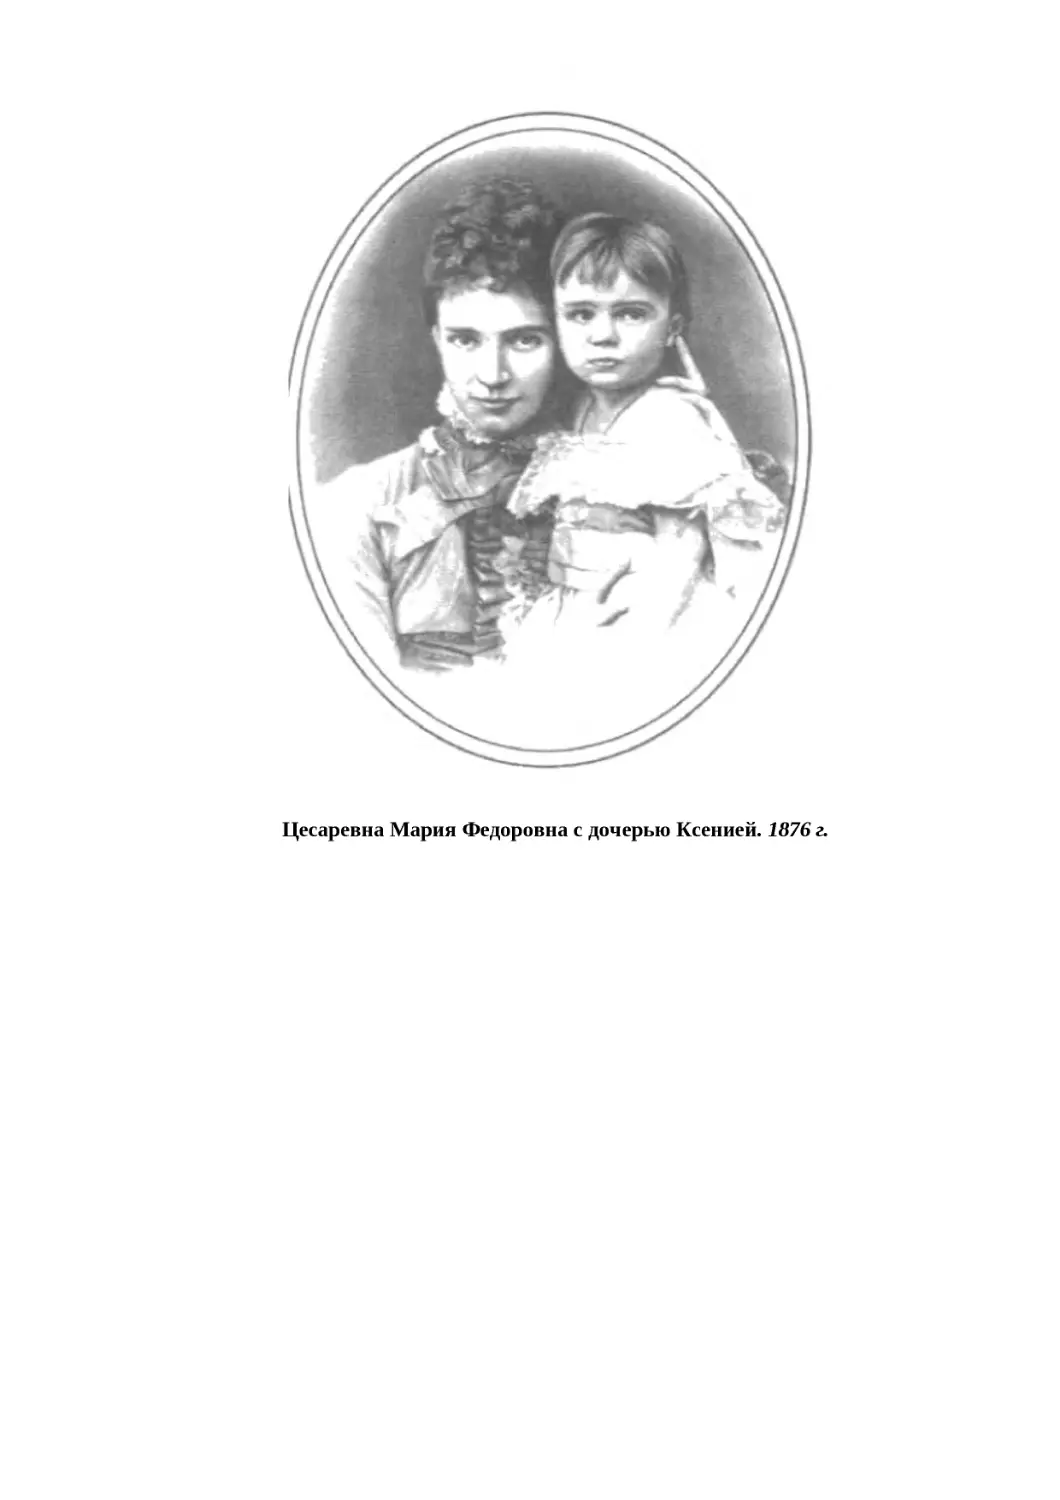 "
﻿Цесаревна Мария Федоровна с дочерью Ксенией. 1876 г